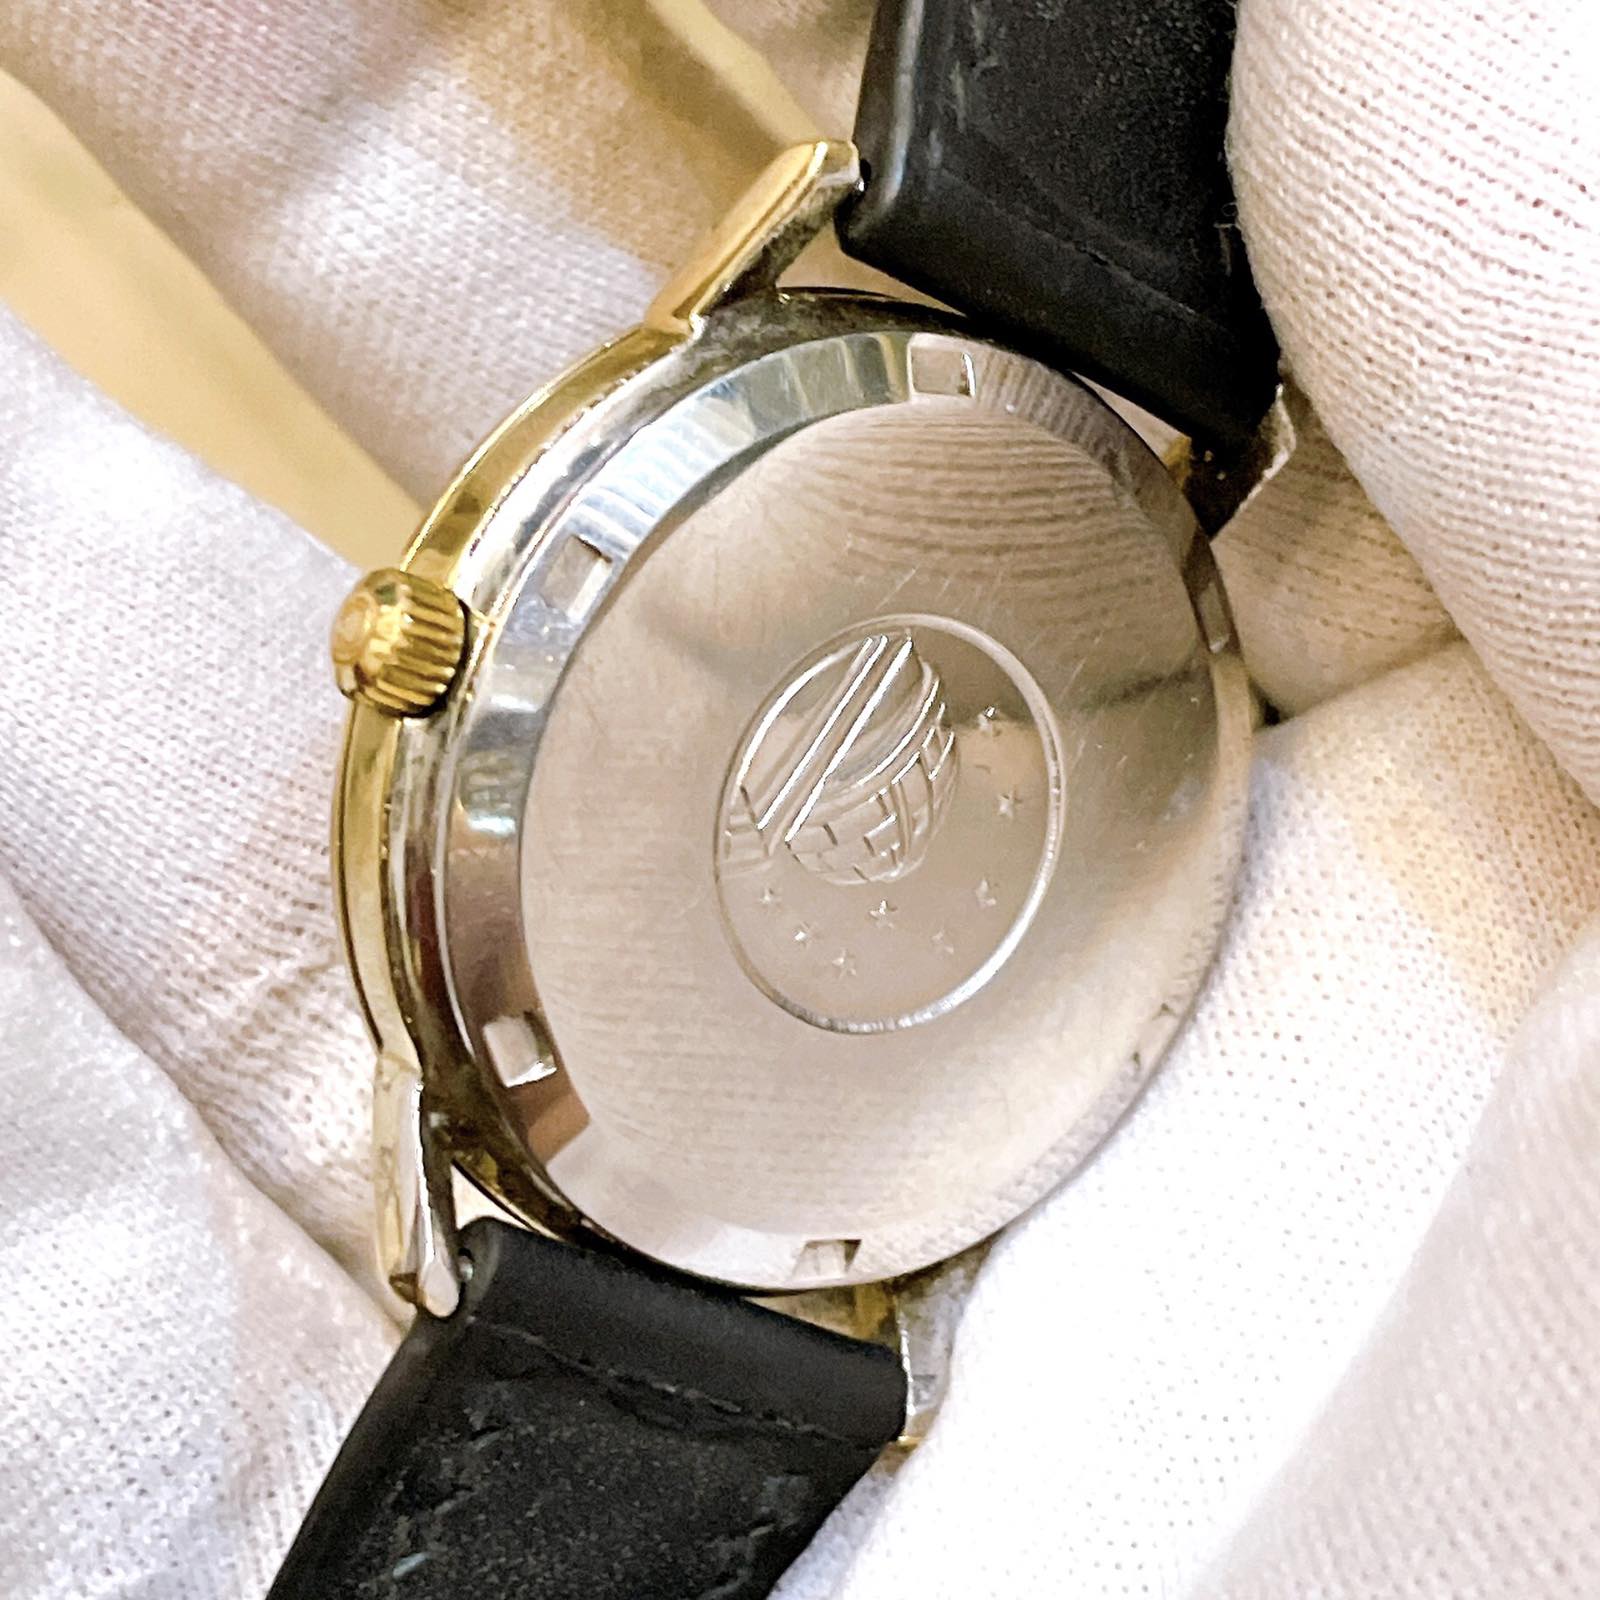 Đồng hồ cổ Omega Automatic Constellation DMI chính hãng thụy Sĩ 